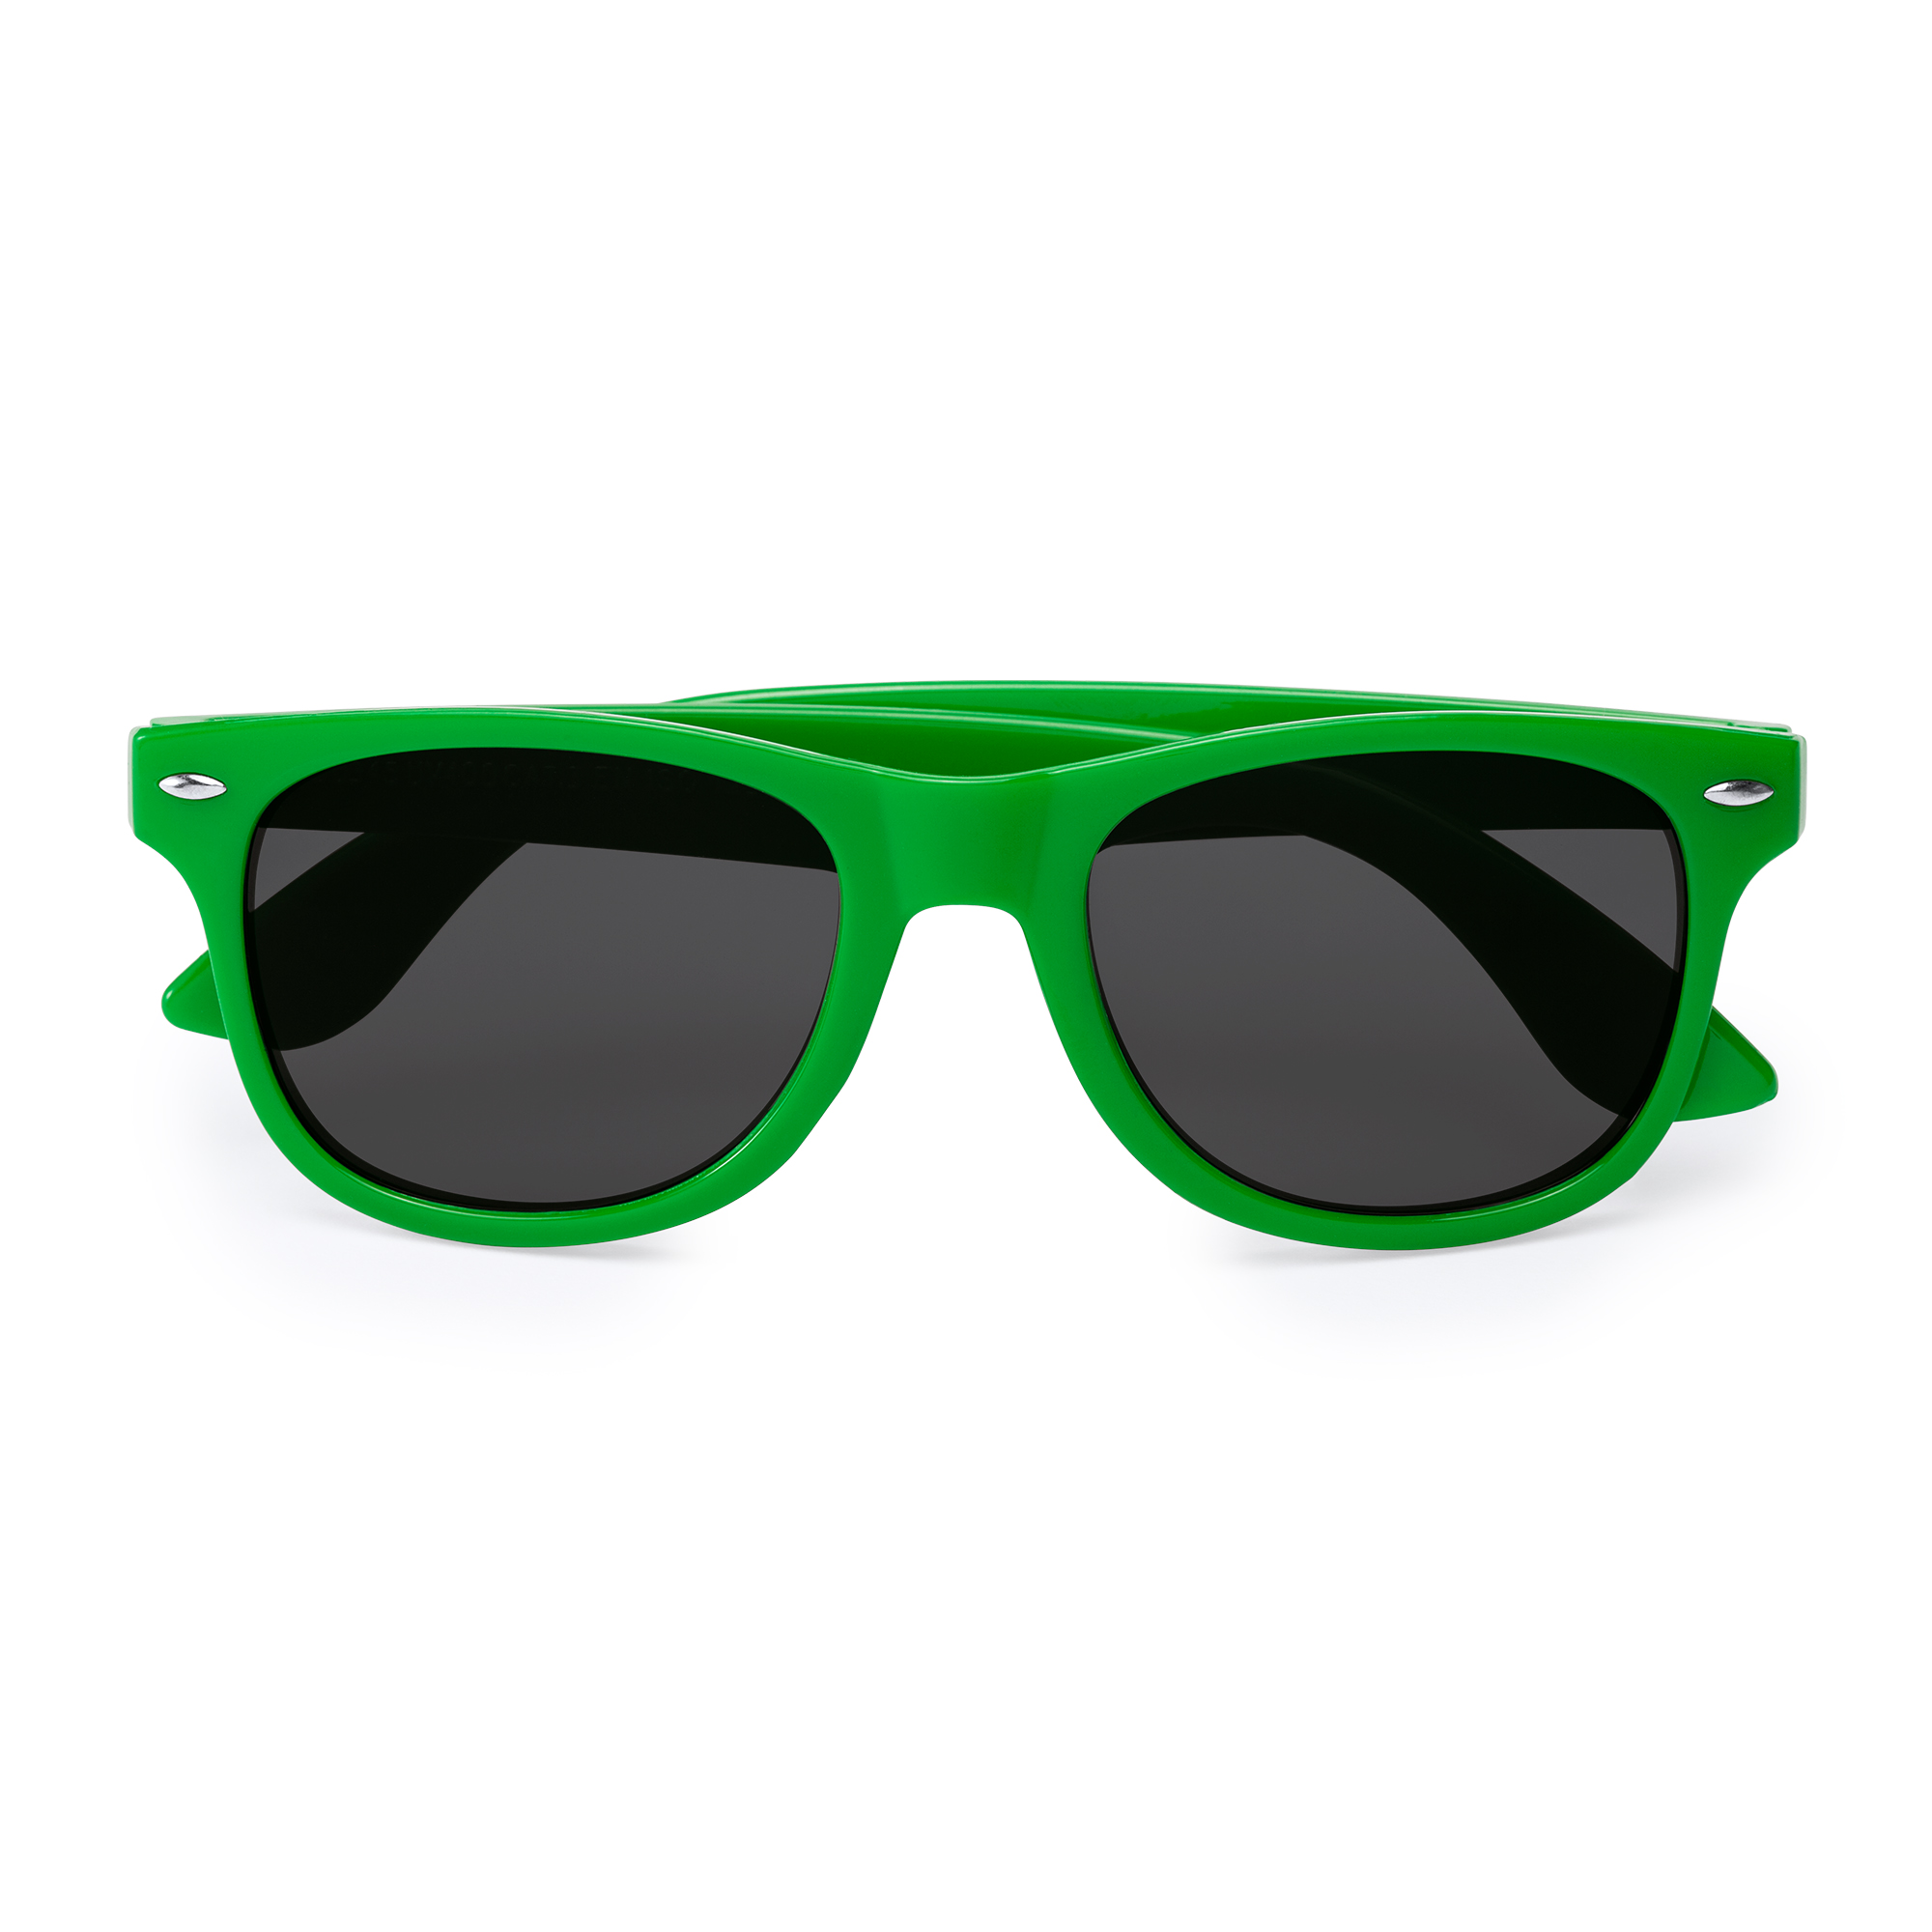 6012-sun-occhiali-da-sole-protezione-uv400-verde.jpg